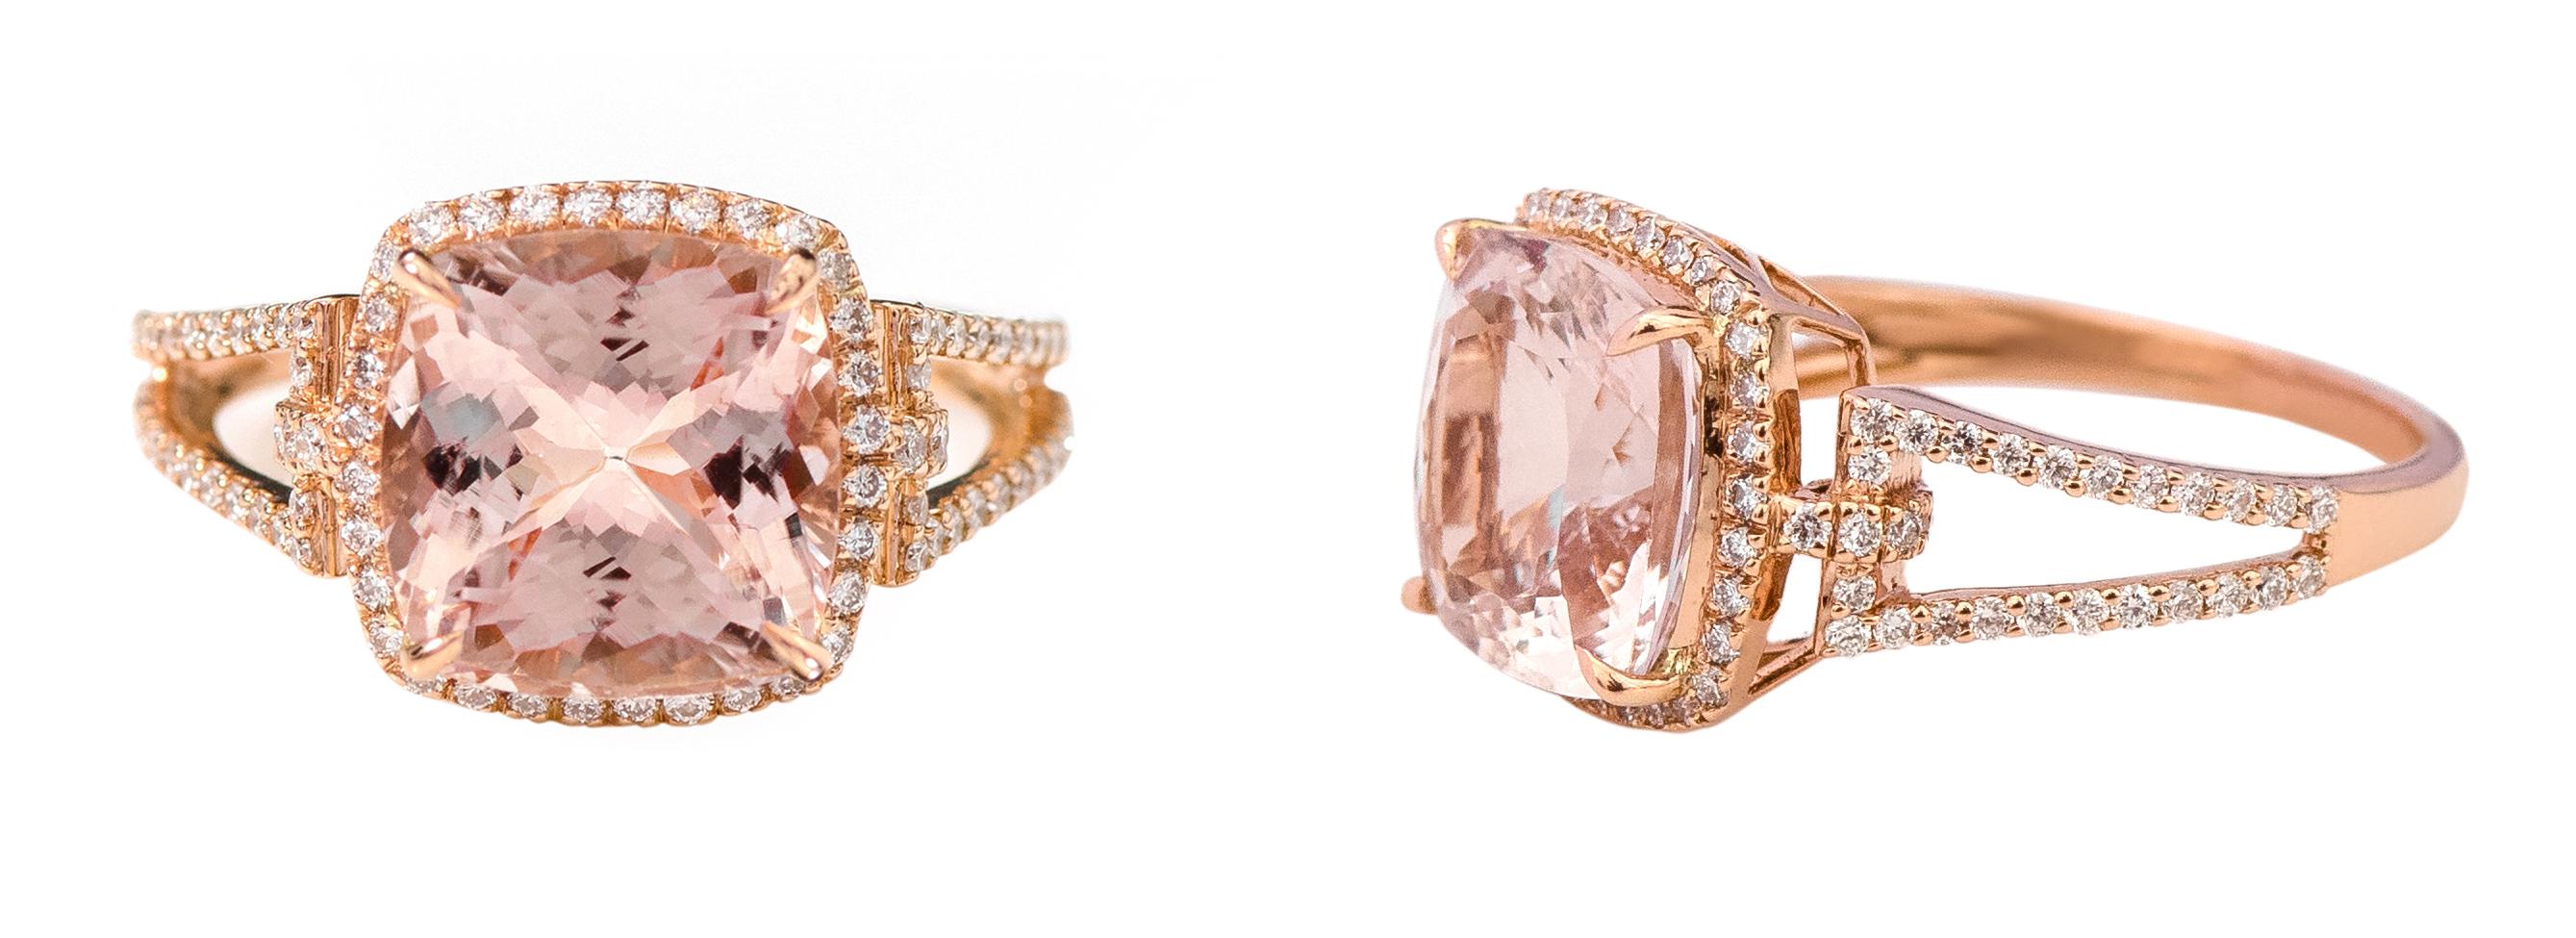 Modern 18Karat Rose Gold 4.05 Carat Cushion-Cut Pink Morganite and Diamond Cluster Ring For Sale